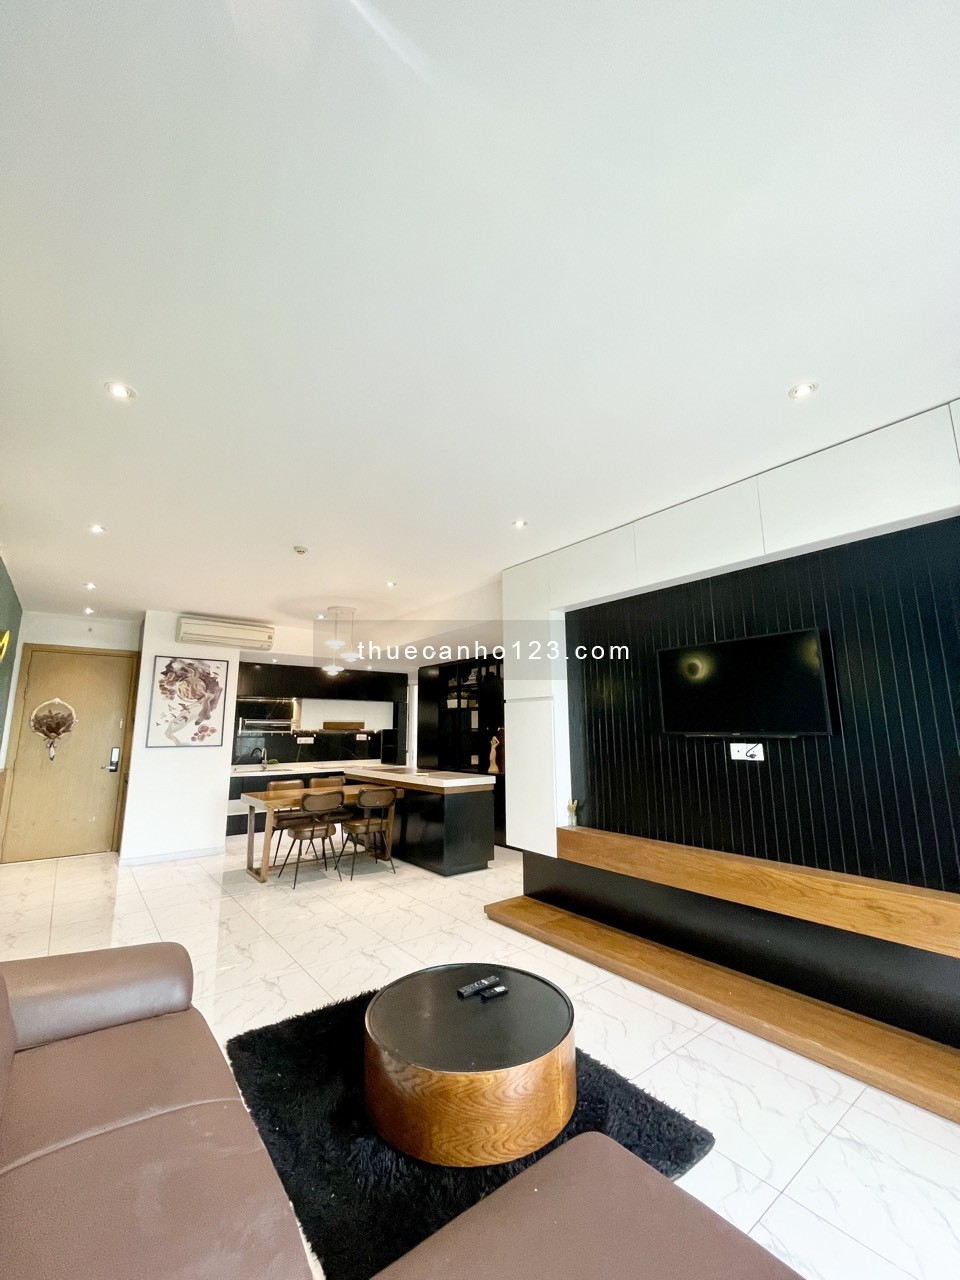 Chuyên cho thuê căn hộ đẹp giá tốt tại Q2, Vista verde, nhà như hình